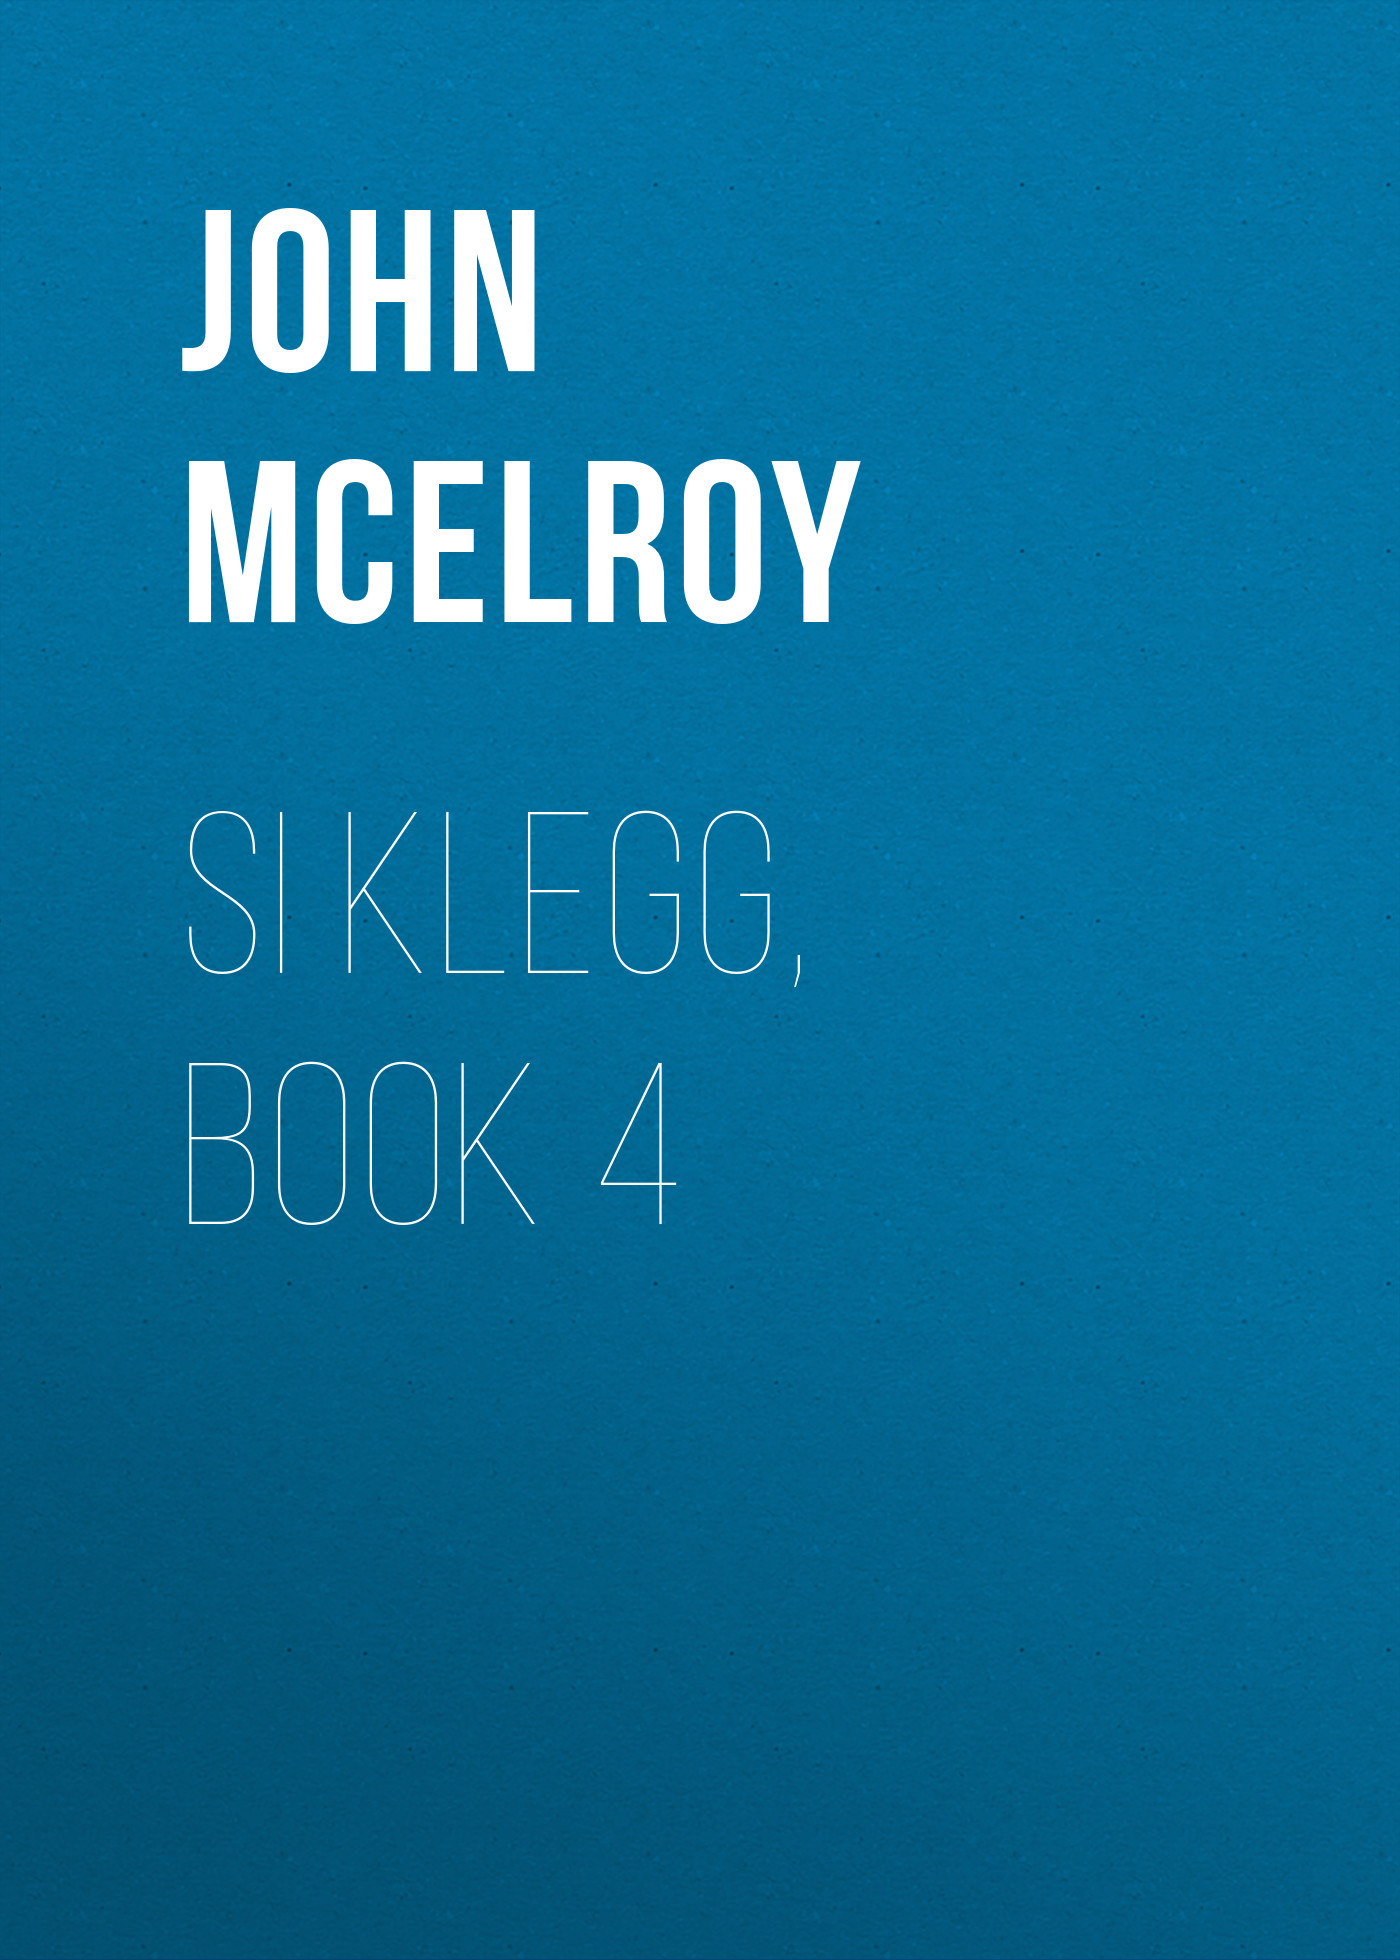 Книга Si Klegg, Book 4 из серии , созданная John McElroy, может относится к жанру Зарубежная классика, История, Зарубежная образовательная литература, Зарубежная старинная литература. Стоимость электронной книги Si Klegg, Book 4 с идентификатором 36324220 составляет 0 руб.